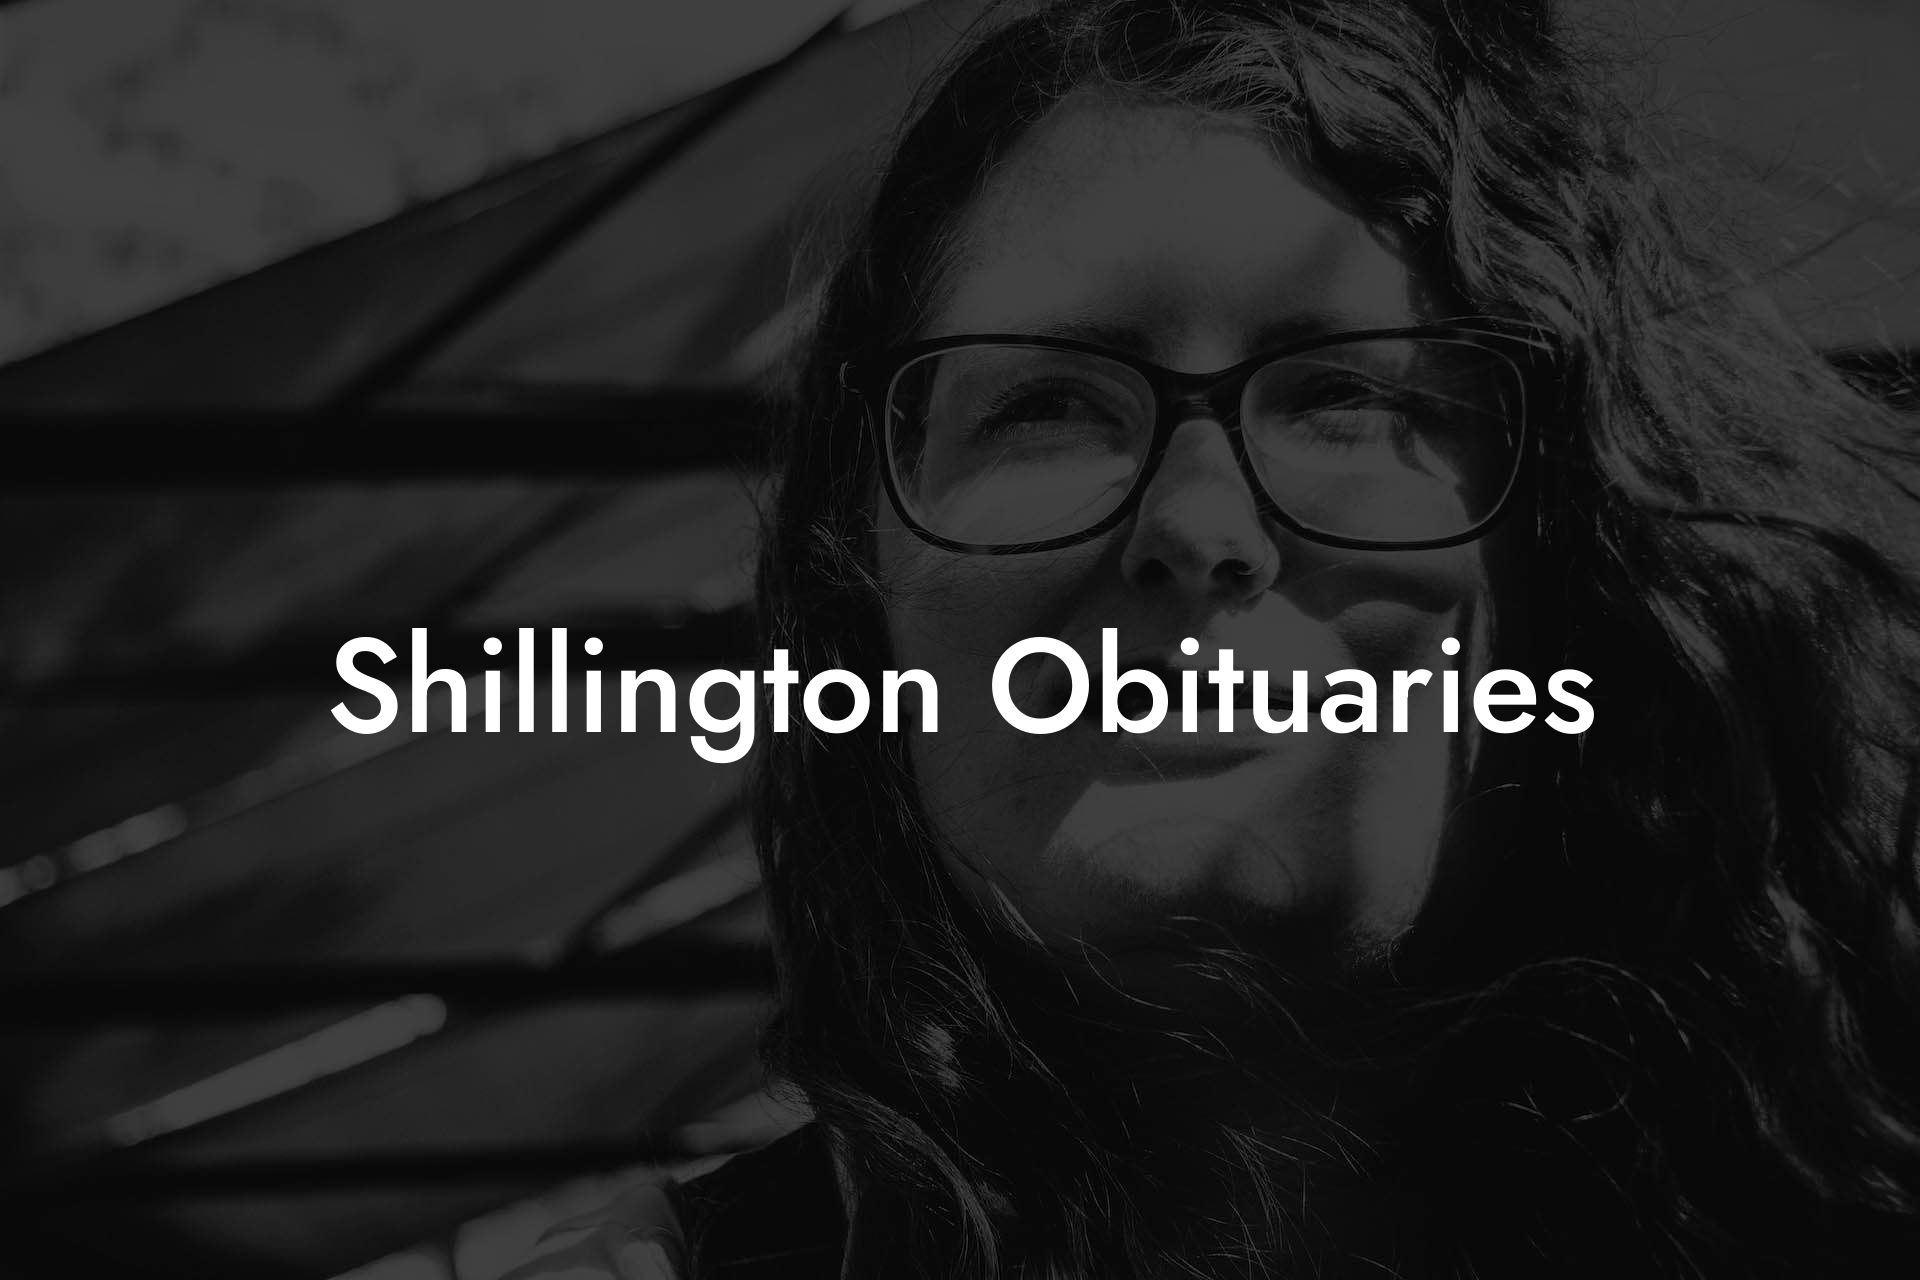 Shillington Obituaries